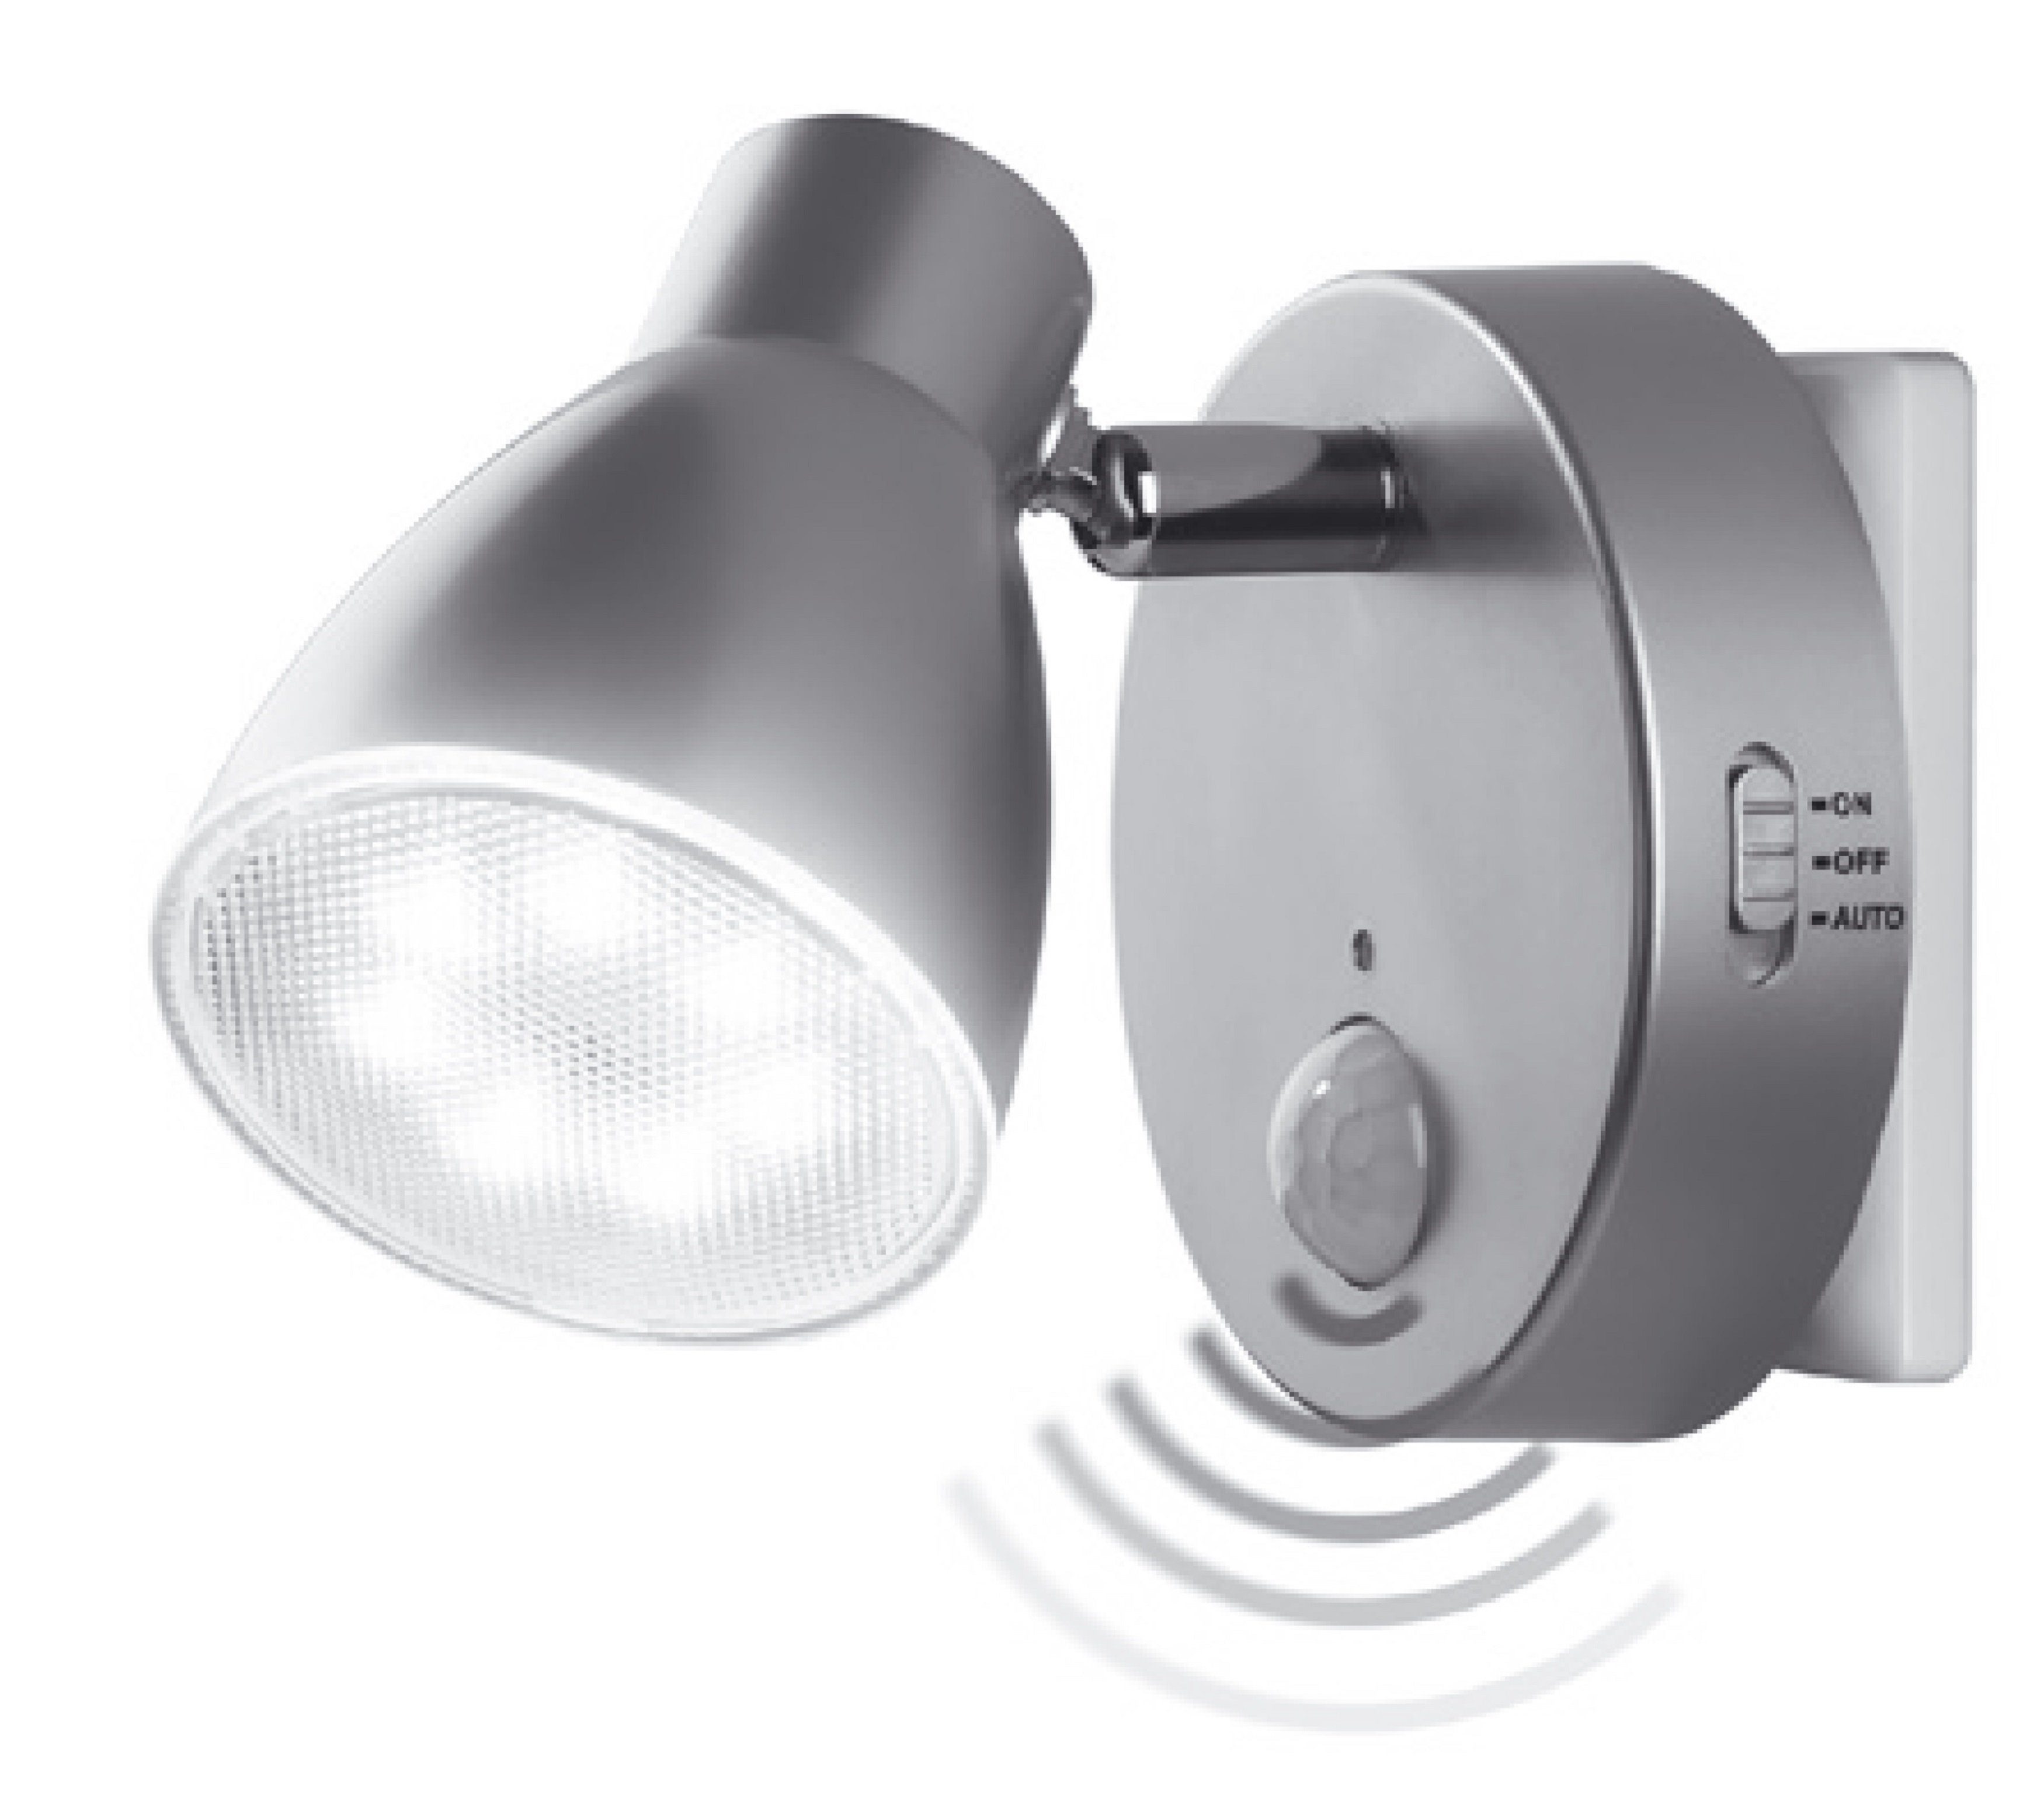 LED & Sicherheitslicht Sensor Set Steckdosenlicht Nachtlampe, 2635-024 mit LED Automatikfunktion Bewegungssensor in 230V Orientierungslicht, TRANGO Wandlampe, Steckdosenleuchte, 2er *MILO* Nachtlicht Steckdosenlampe, Silber